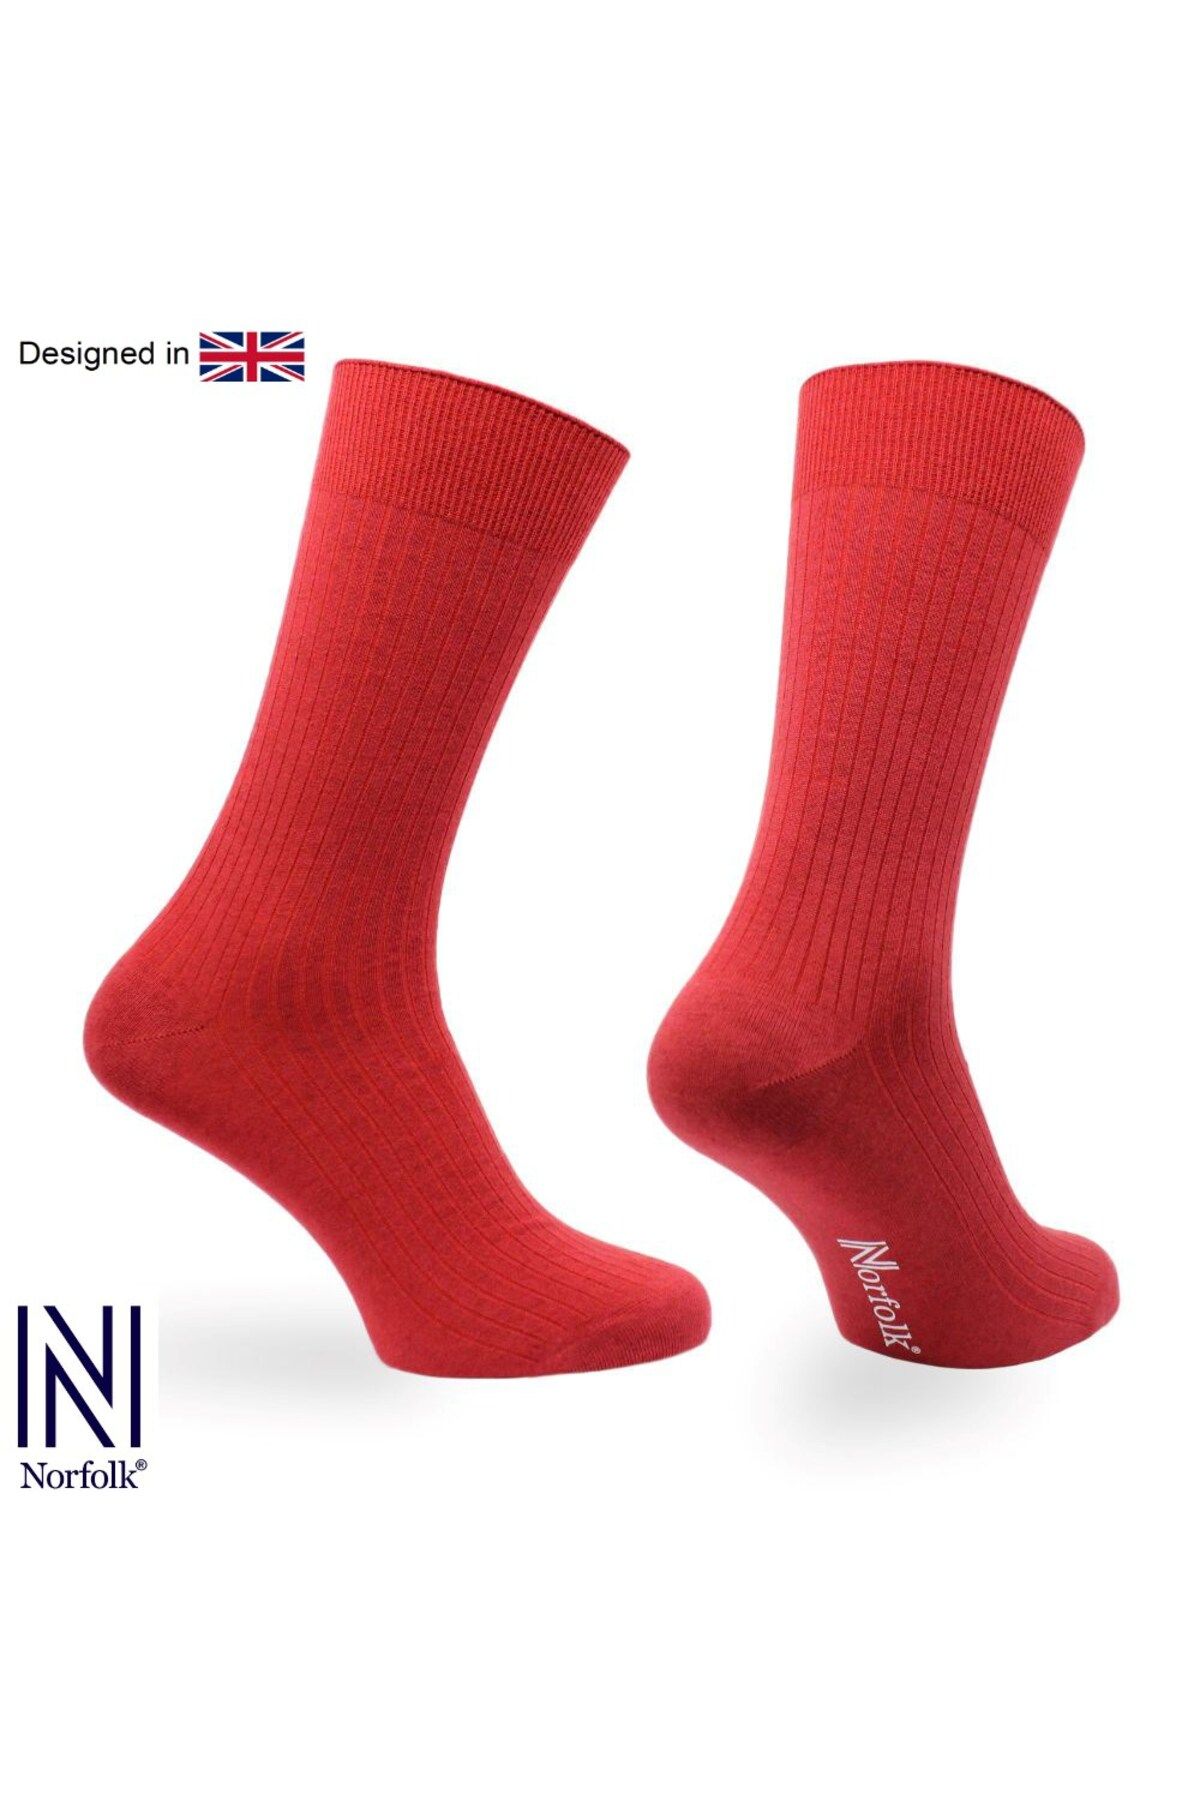 Norfolk Monaco Premium Lüks Kaşmir Kırmızı Günlük Çorap 1 Çift Paket